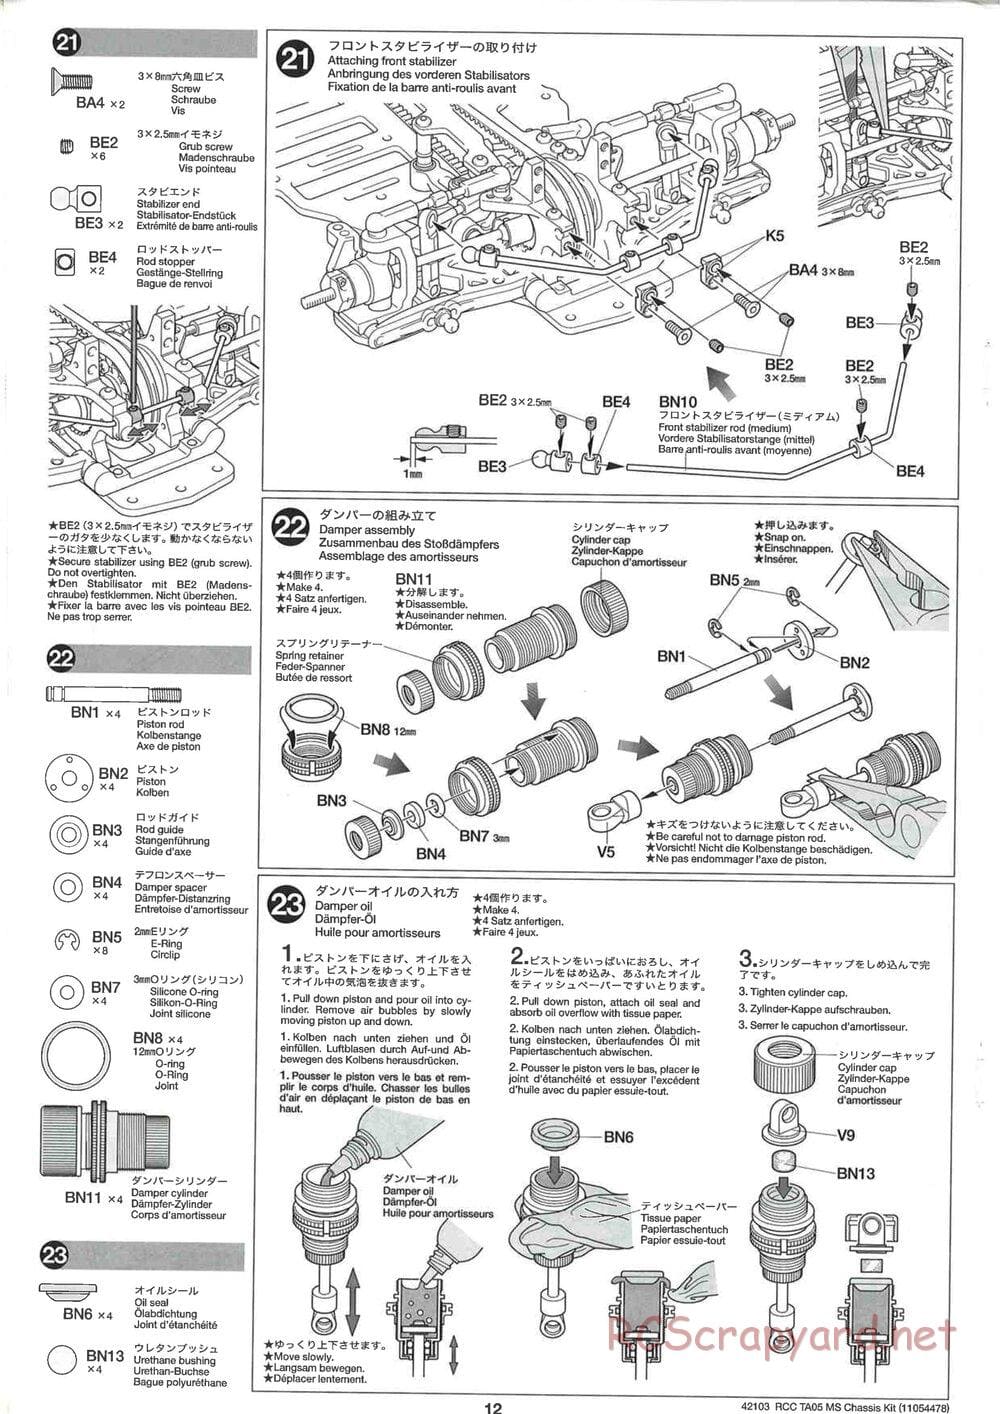 Tamiya - TA05 MS Chassis - Manual - Page 12